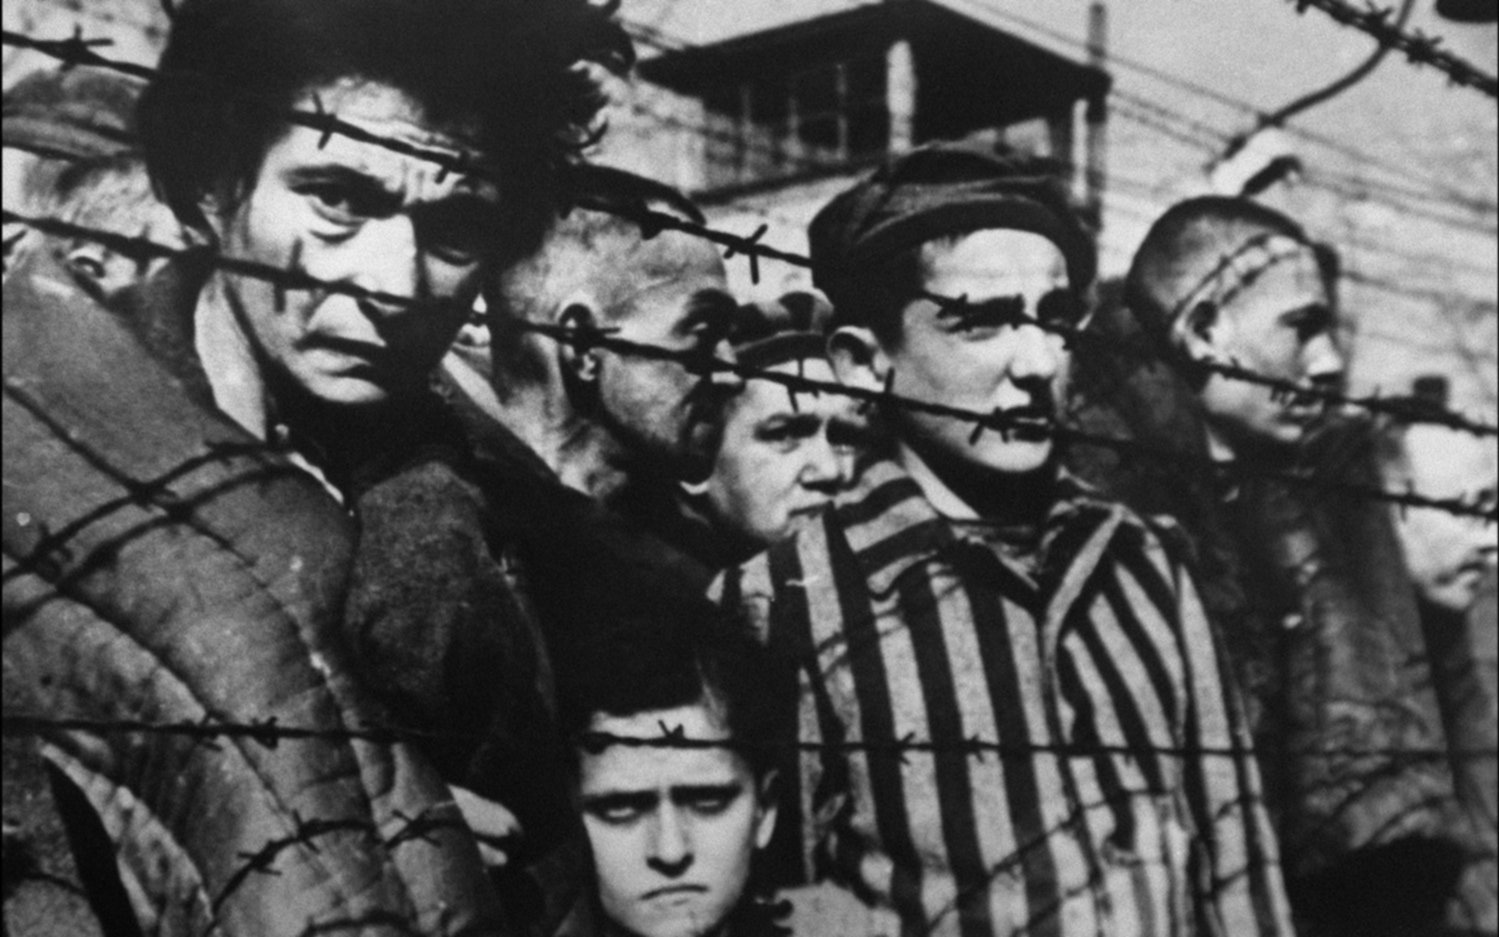 El mundo no olvida el Holocausto